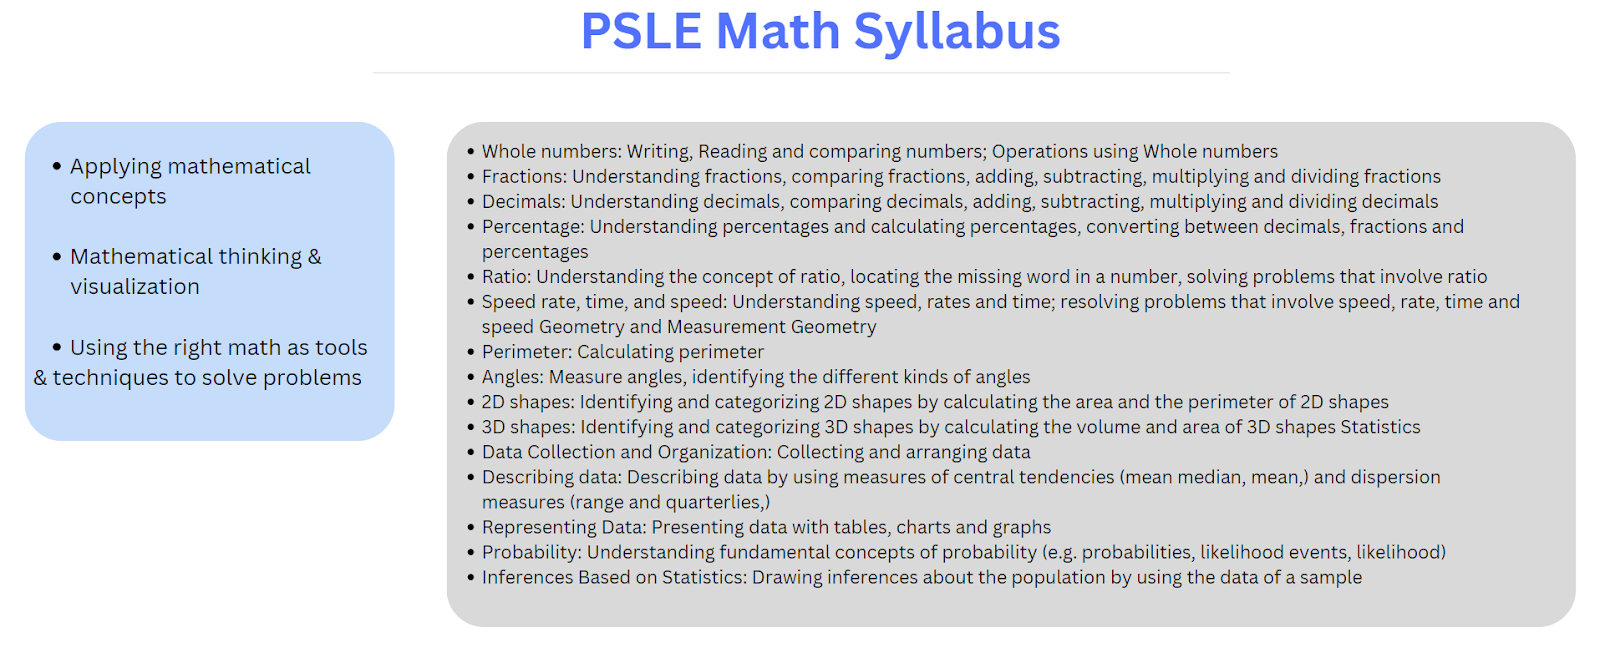 PSLE Exam Singapore - Mathematics Syllabus